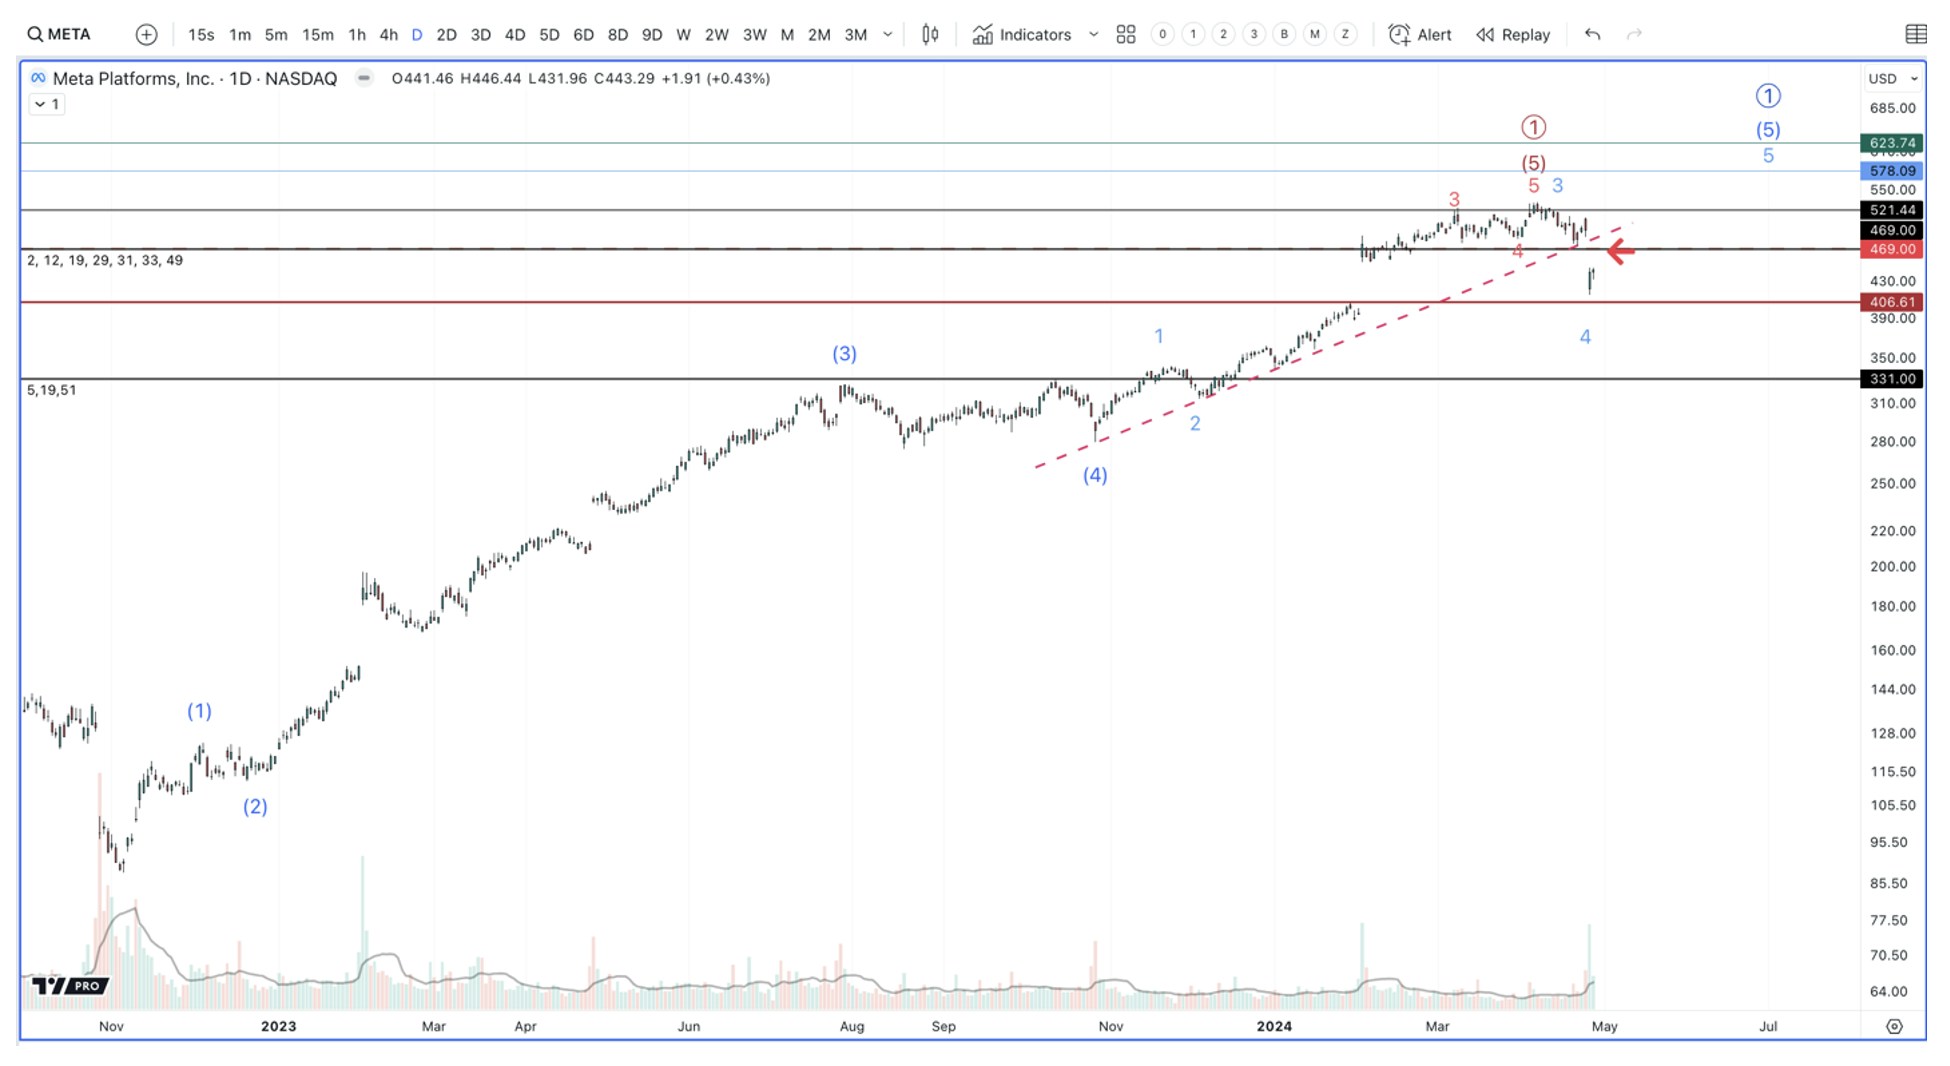 meta stock chart analysis